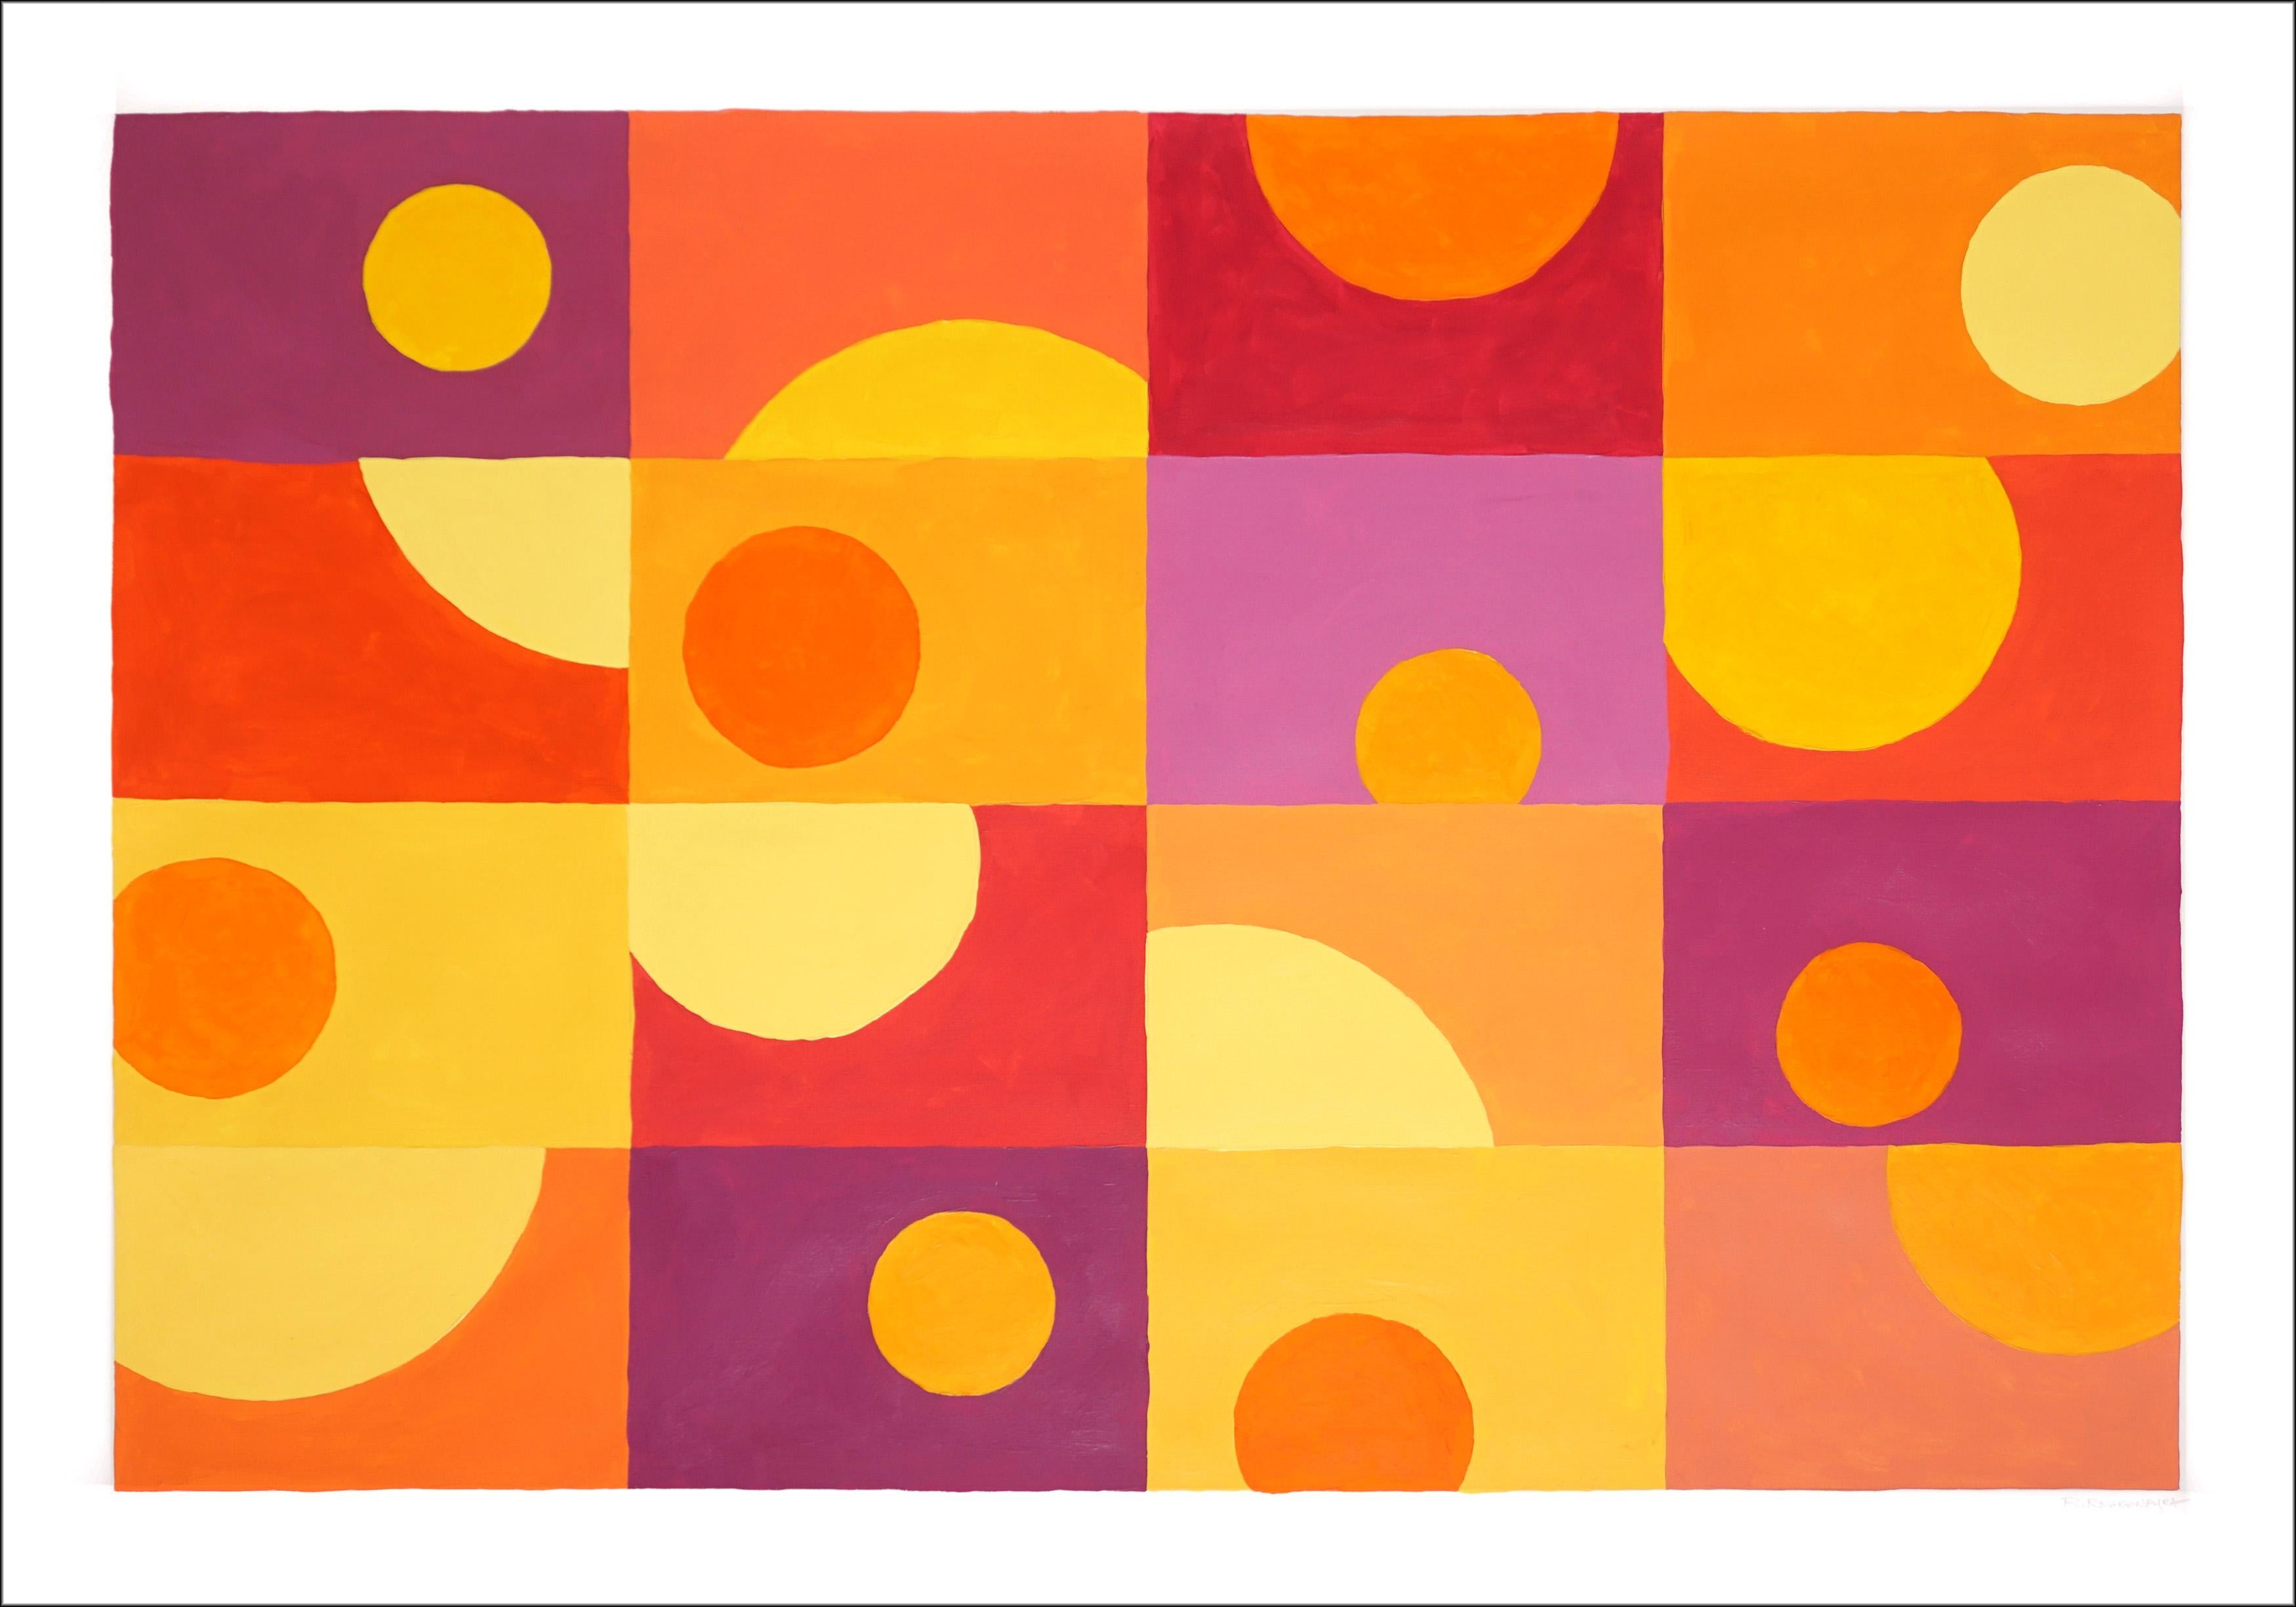 Sixteen Sunsets, tons chauds jaunes, orange, rouge, carreaux horizontals géométriques